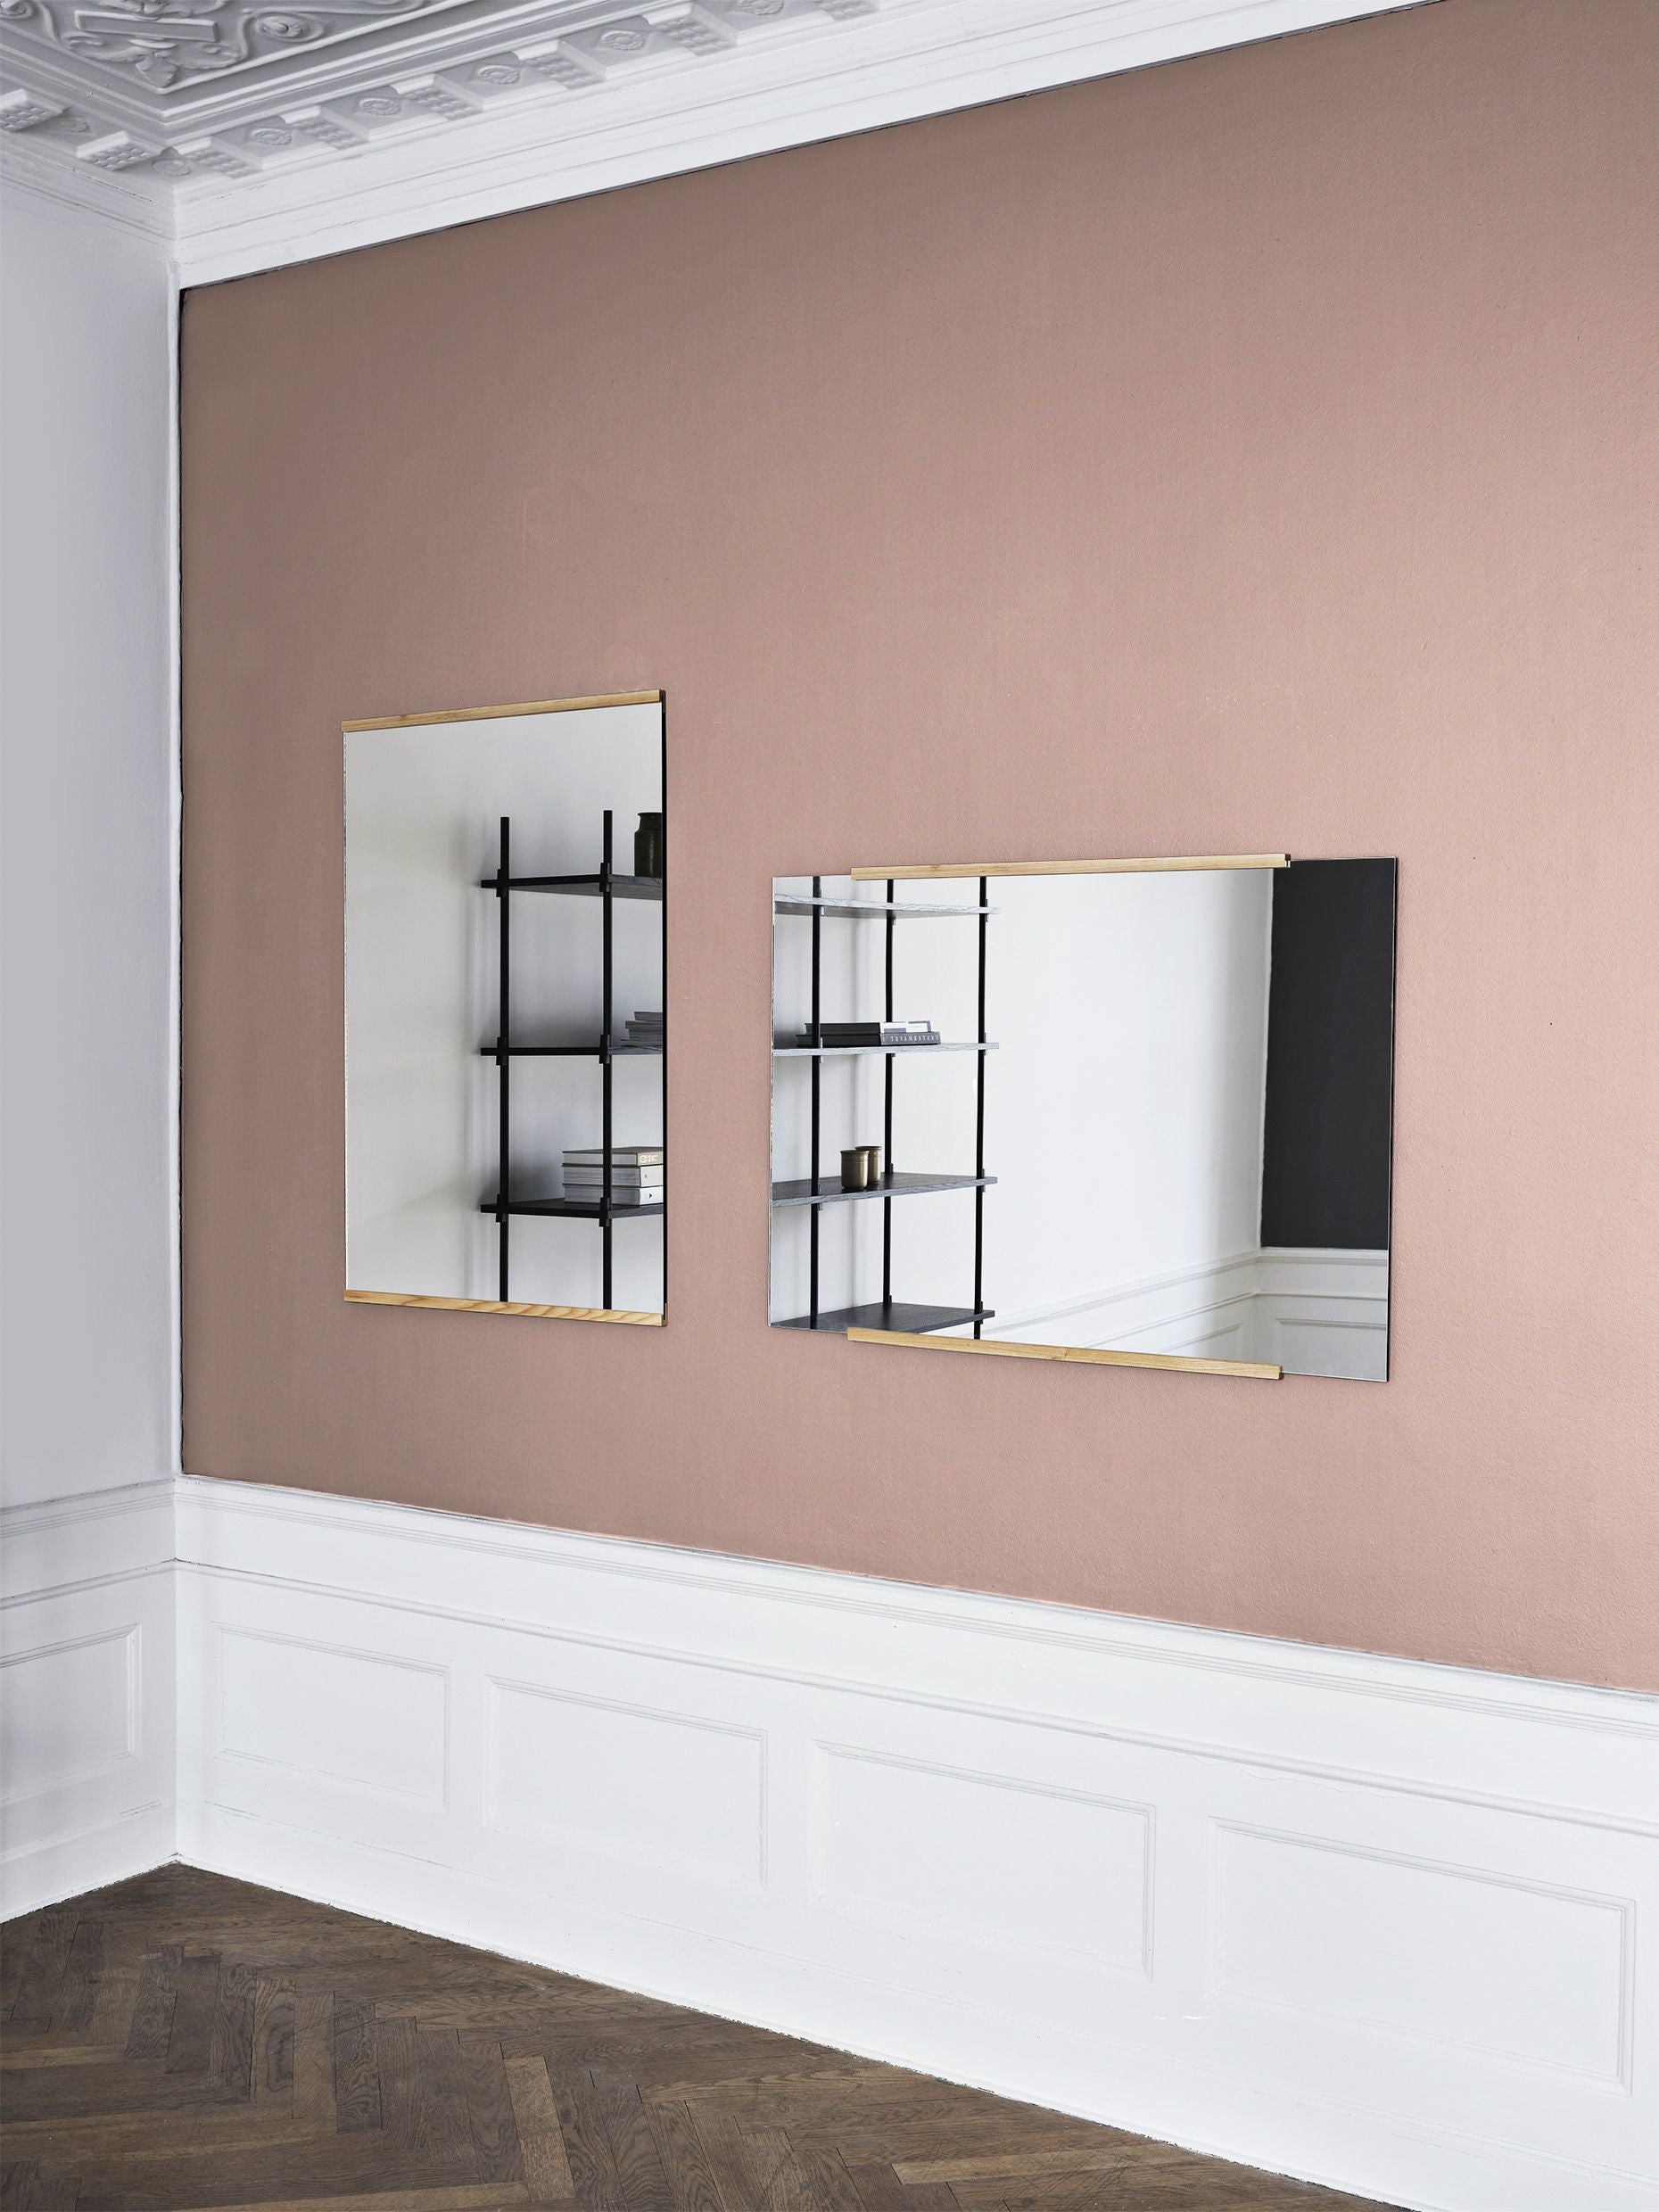 Specchio da parete rettangolare Moebe 43,3x30 cm, quercia